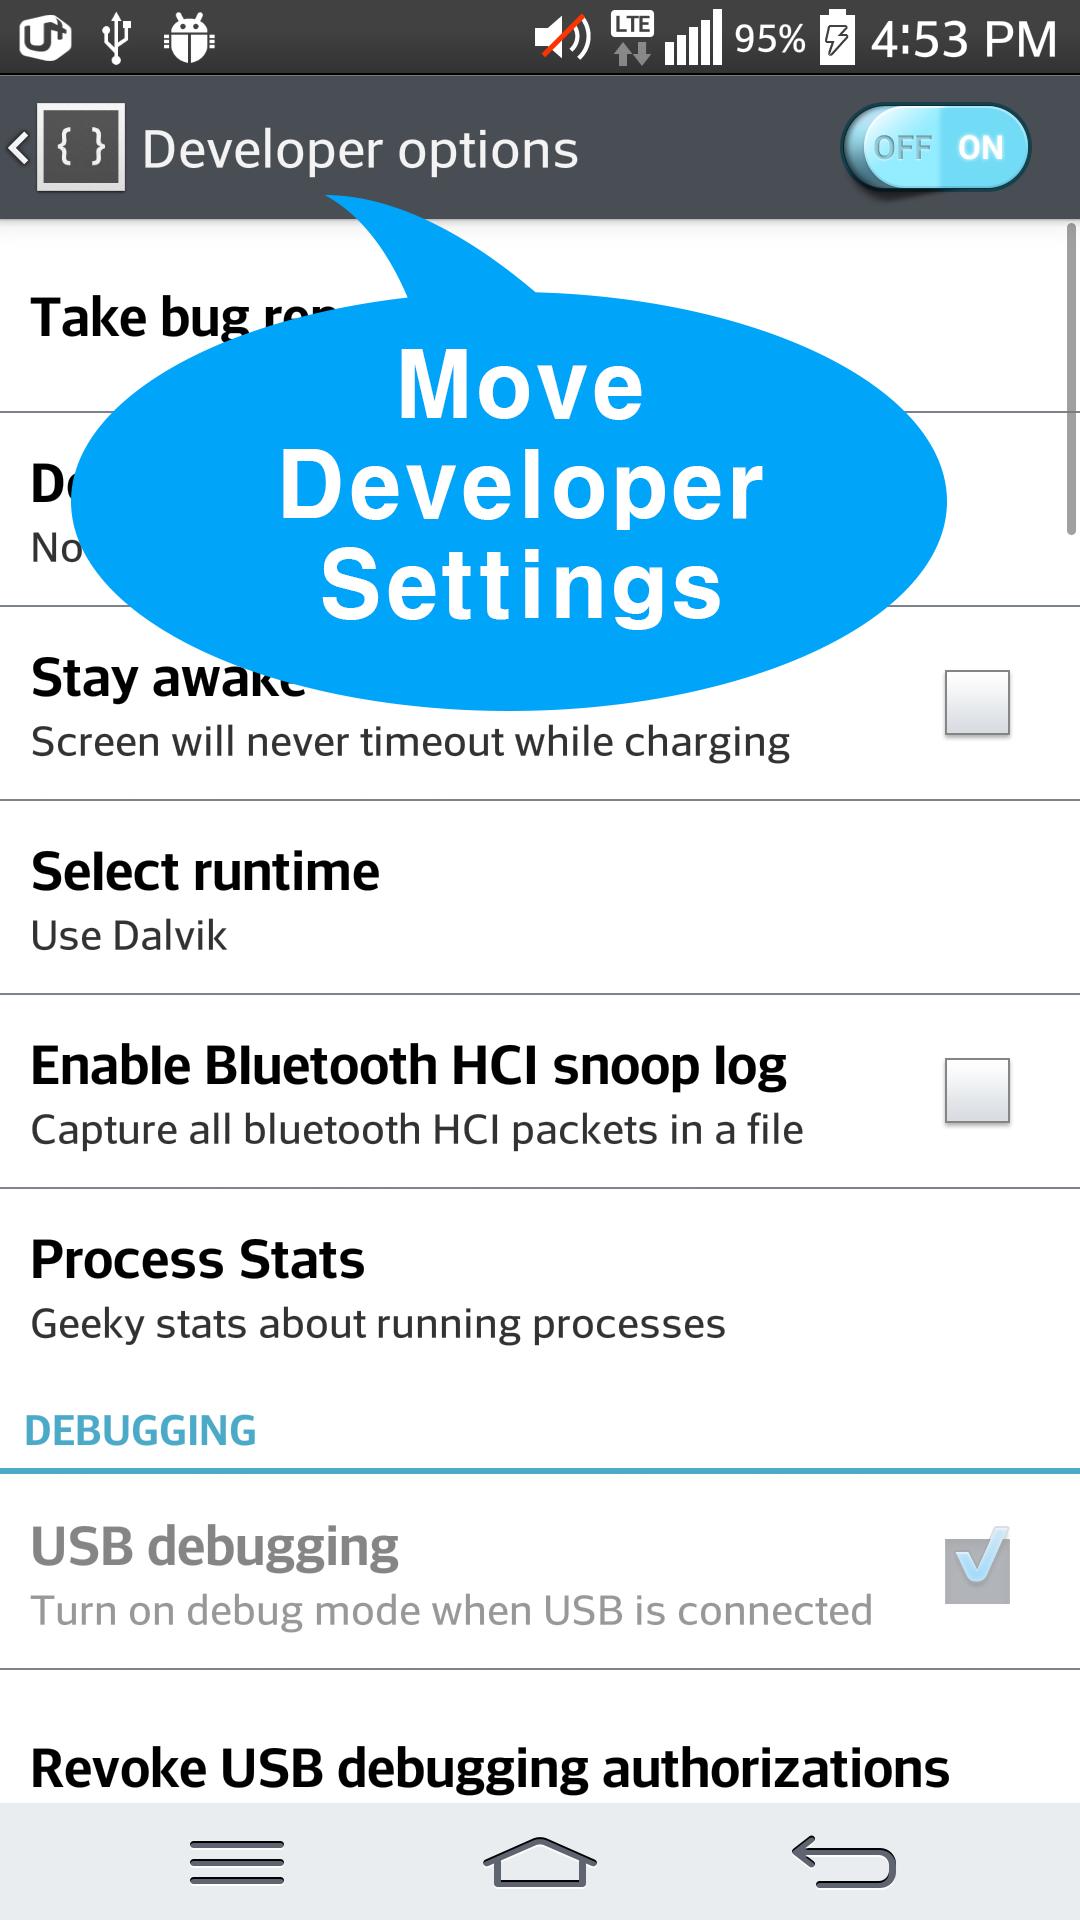 Android developer settings. Developer settings. Dev settings APK 4pda. Developer settings Android в АПК коде. Development setting